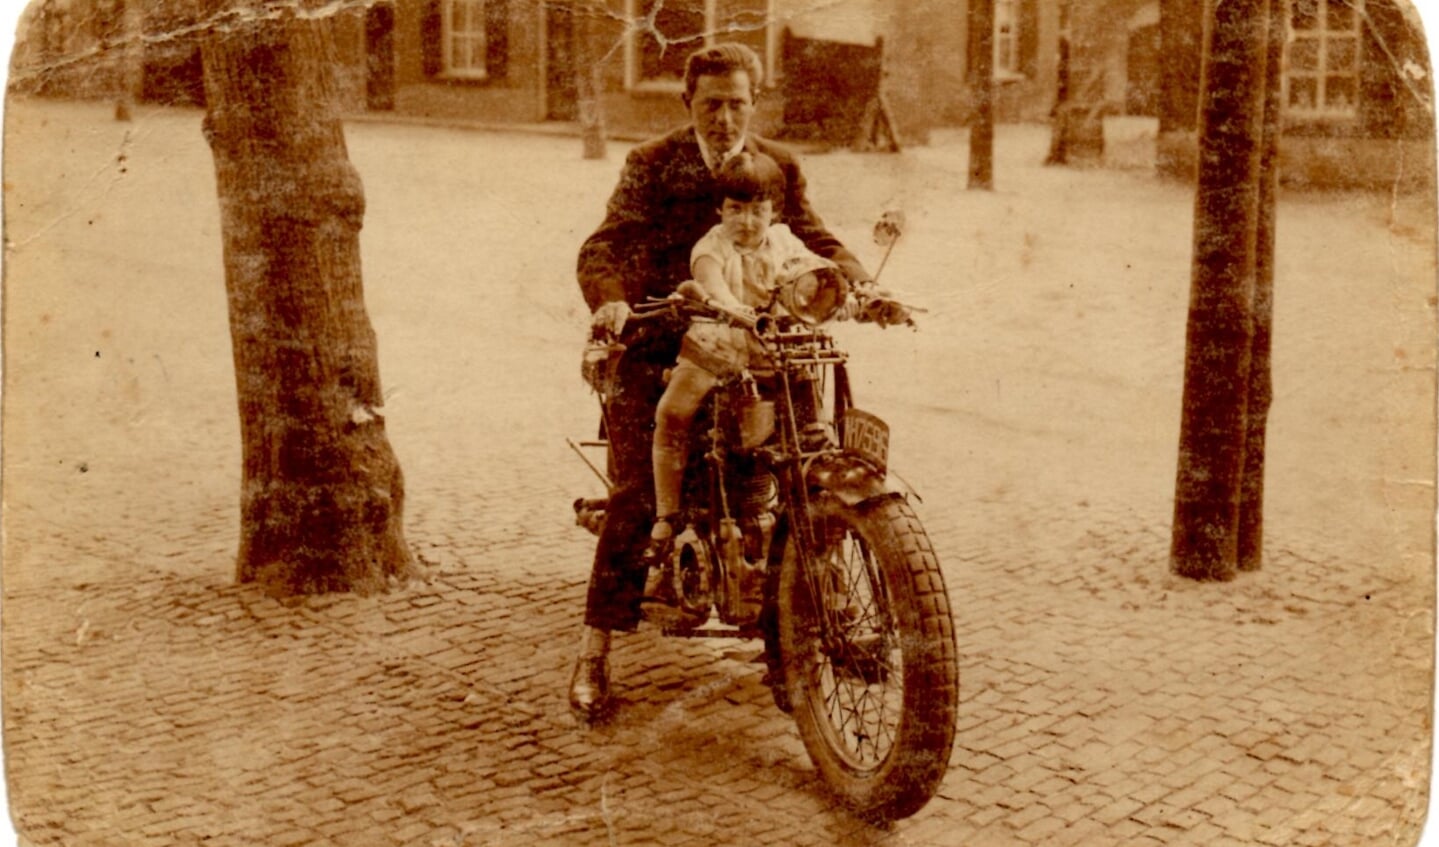 David van Zwanenbergh met zijn dochtertje Betty, rond 1928 in de Marktstraat in Uden (bron: collectie familie Stronkhorst)